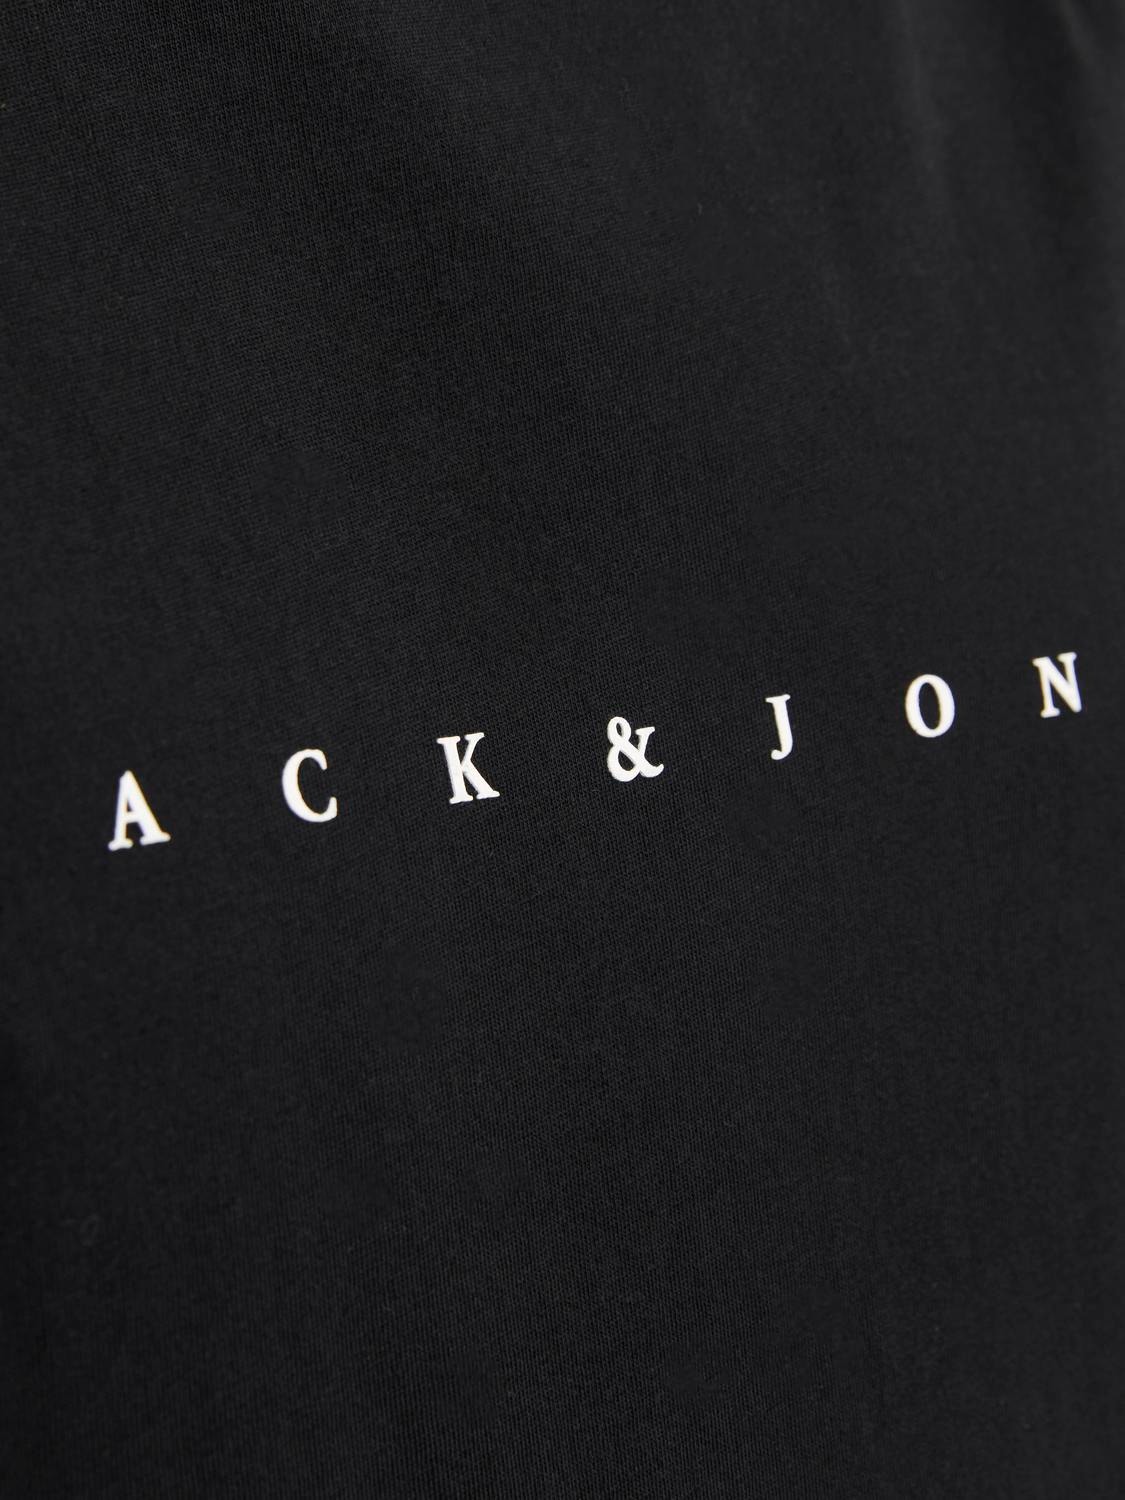 Jack & Jones Gedruckt Rundhals Tanktop -Black - 12249131